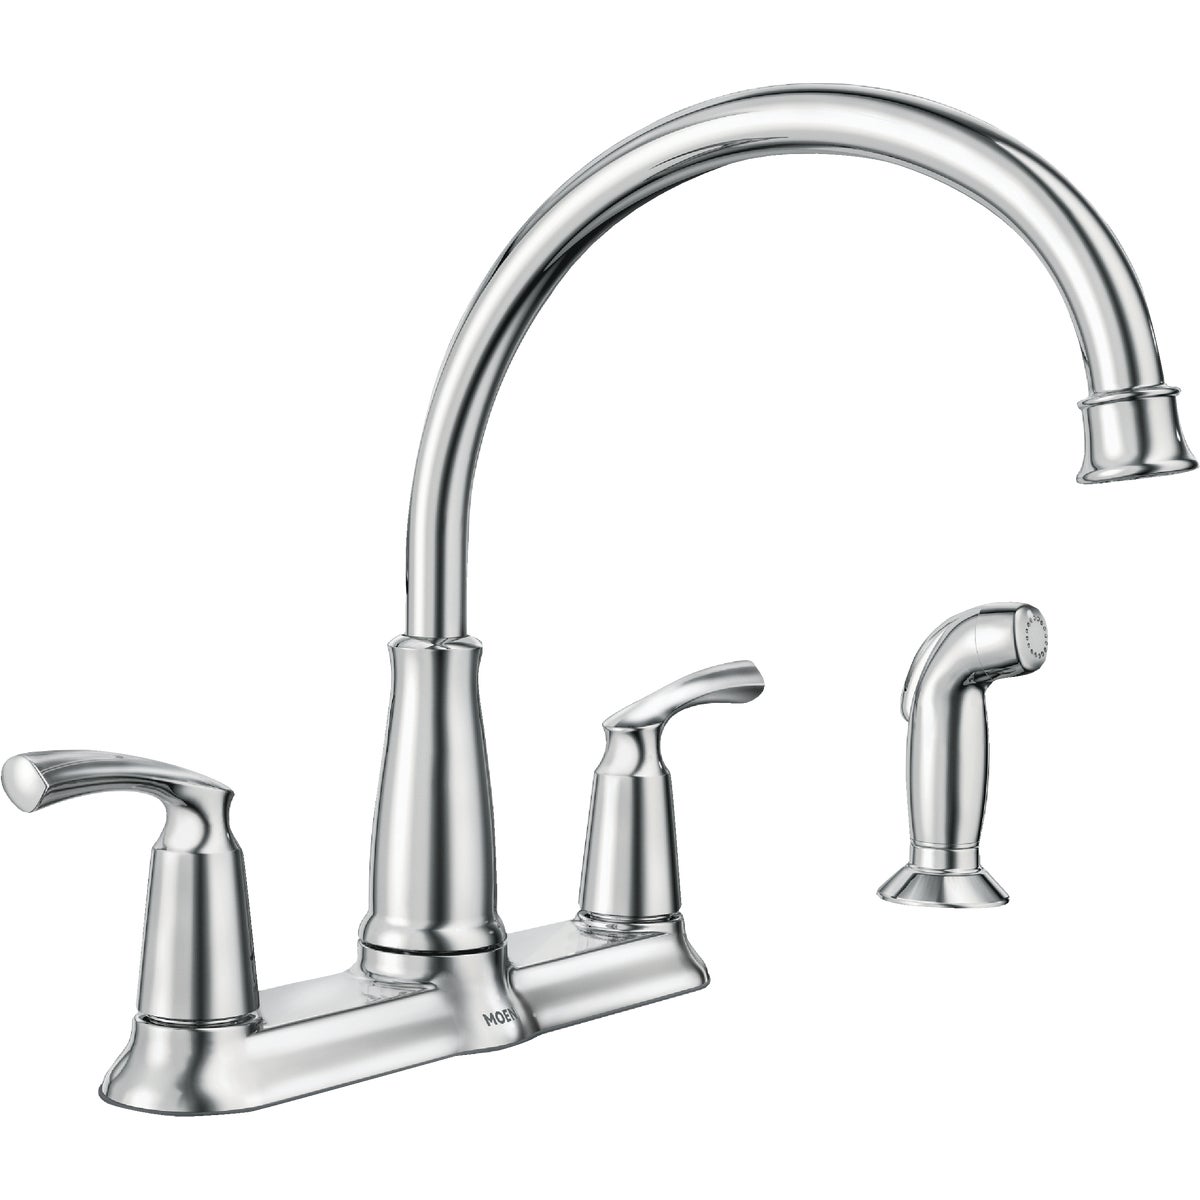 Item 405209, Double handle high arc kitchen faucet.